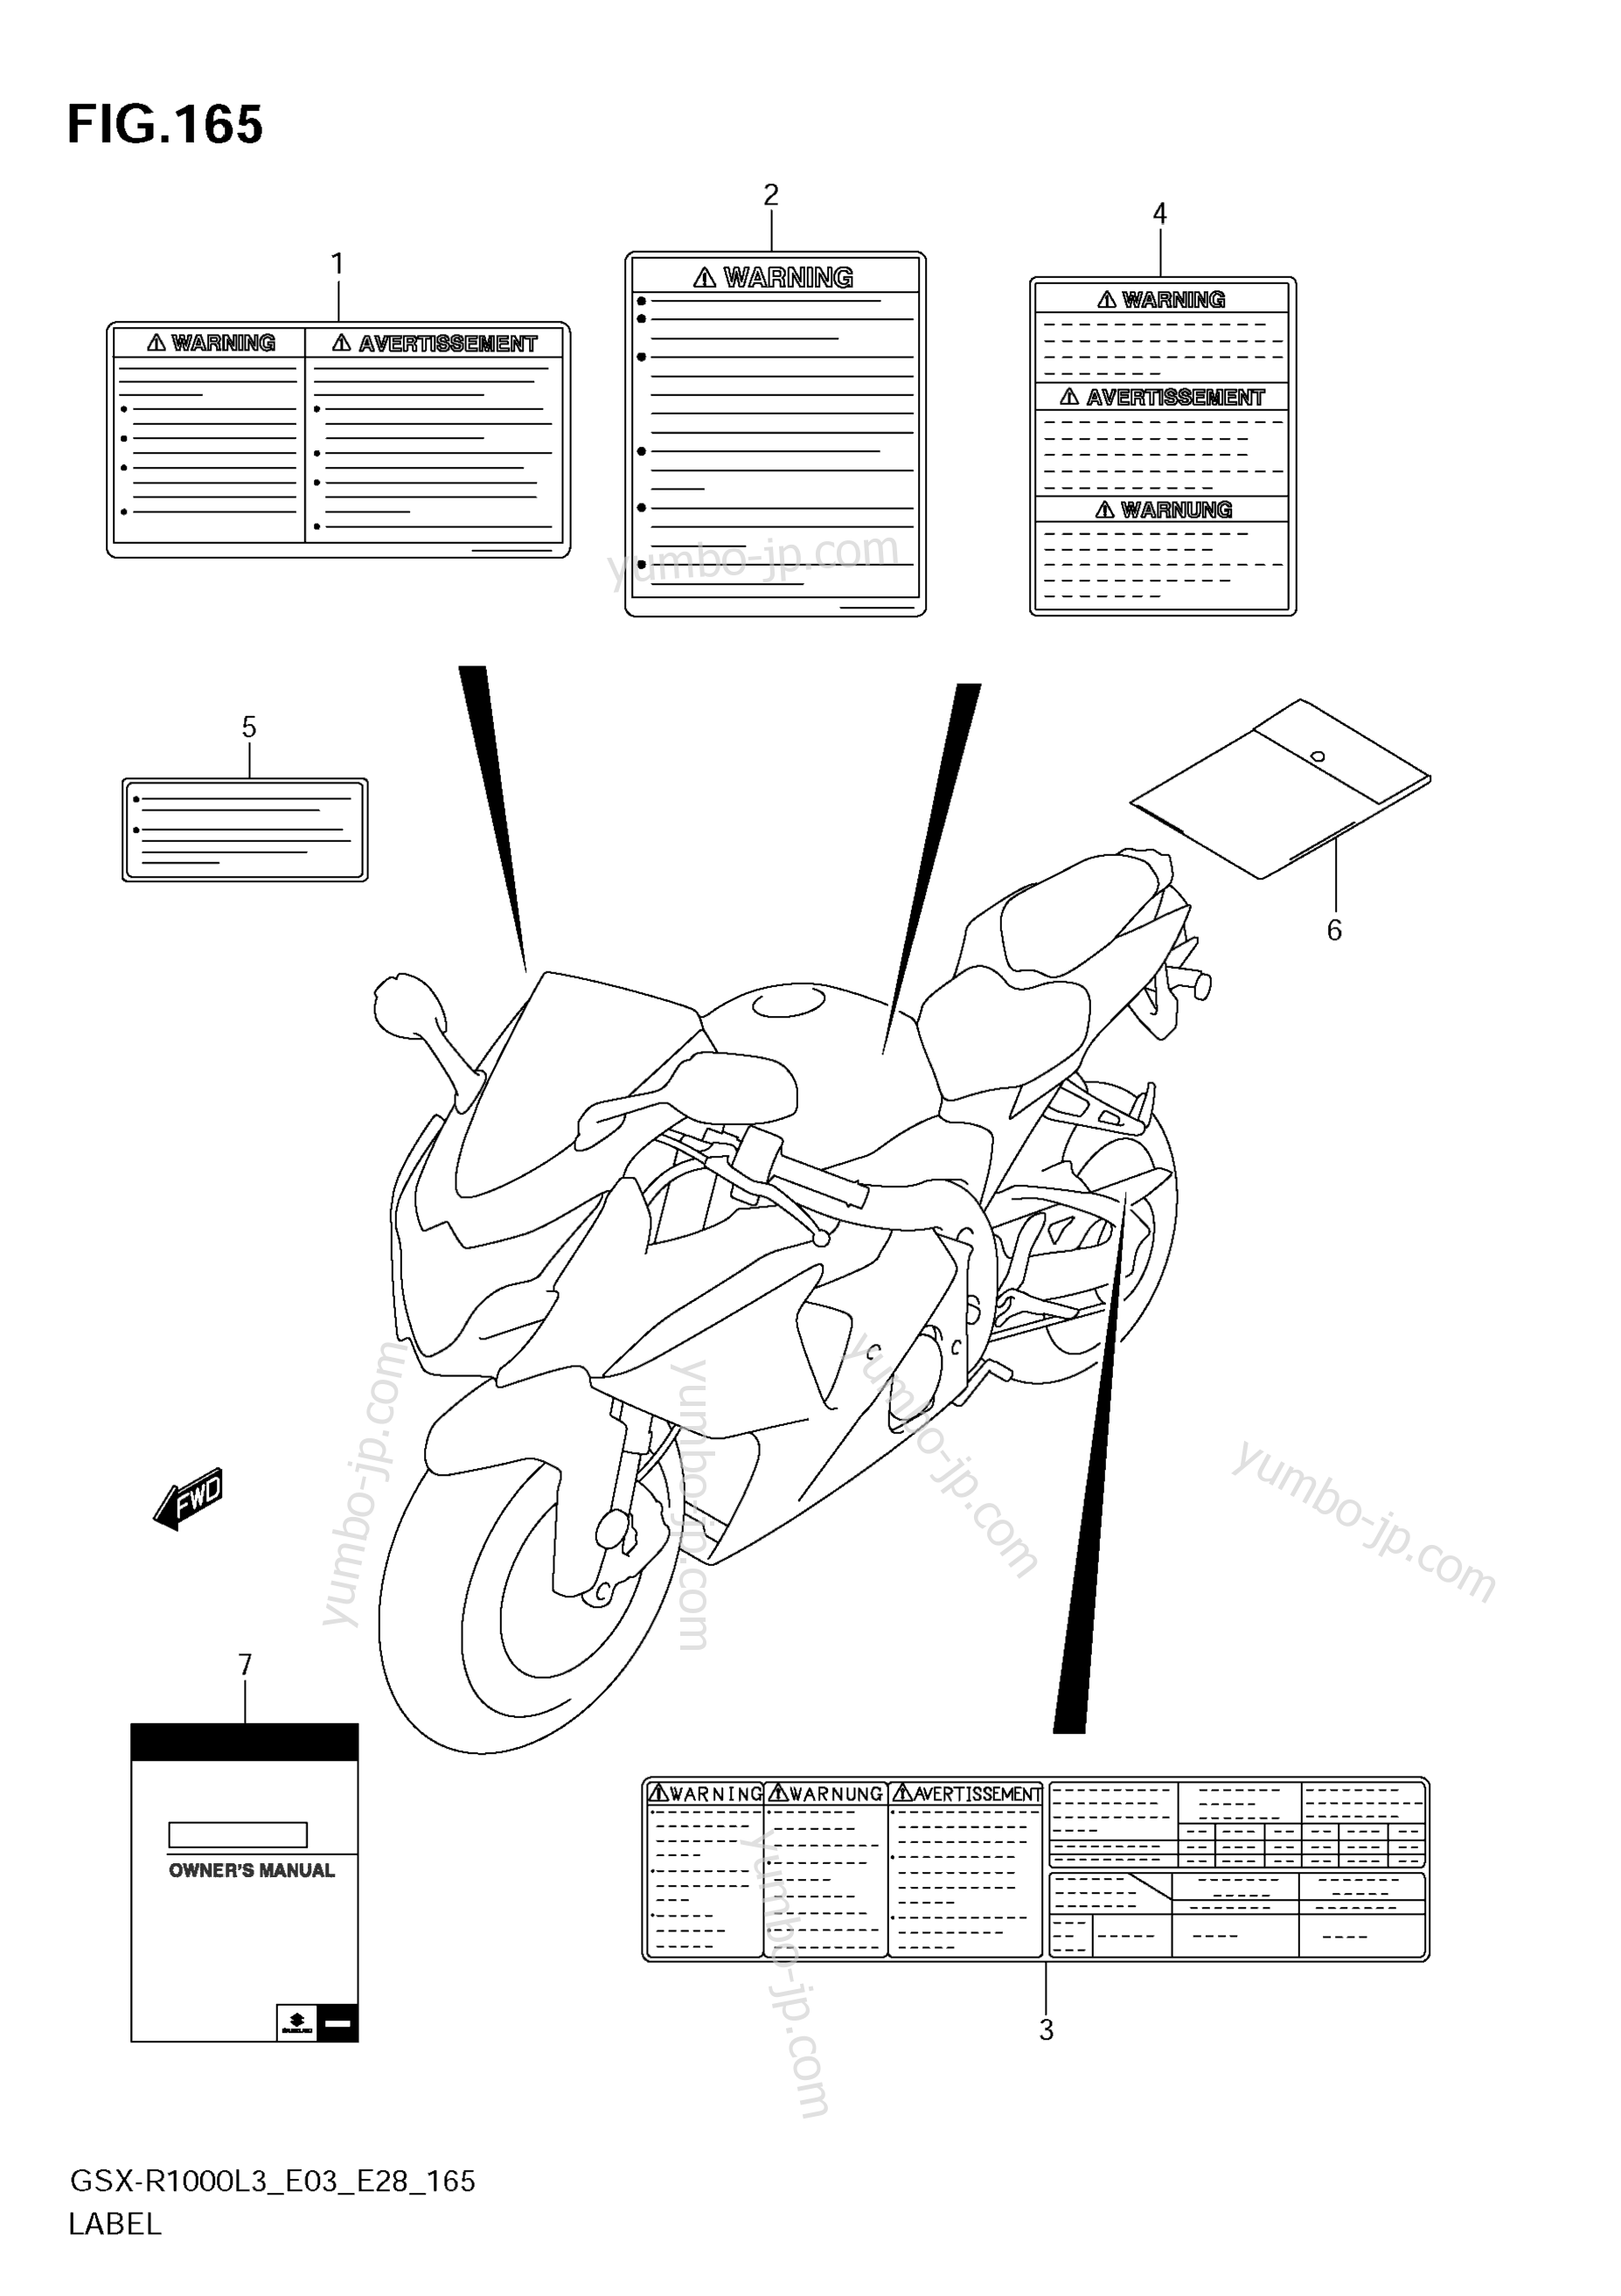 LABEL (GSX-R1000ZL3 E28) for motorcycles SUZUKI GSX-R1000 2013 year